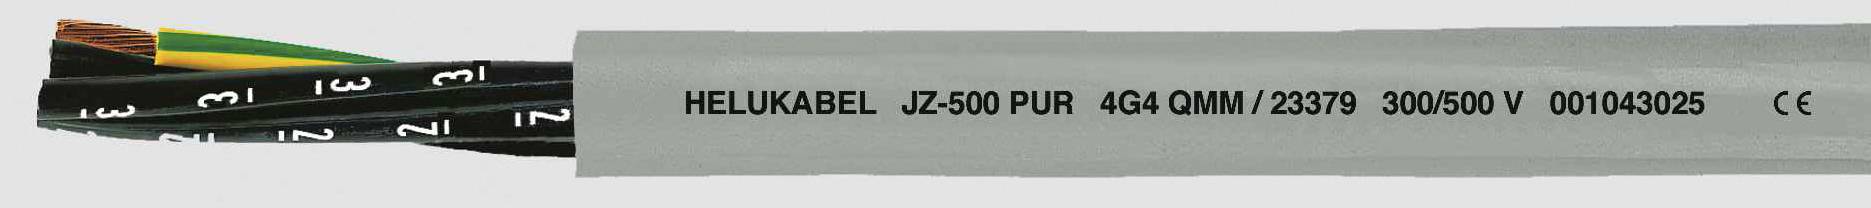 HELUKABEL JZ-500 PUR Steuerleitung 4 G 1 mm² Grau 23347-1000 1000 m